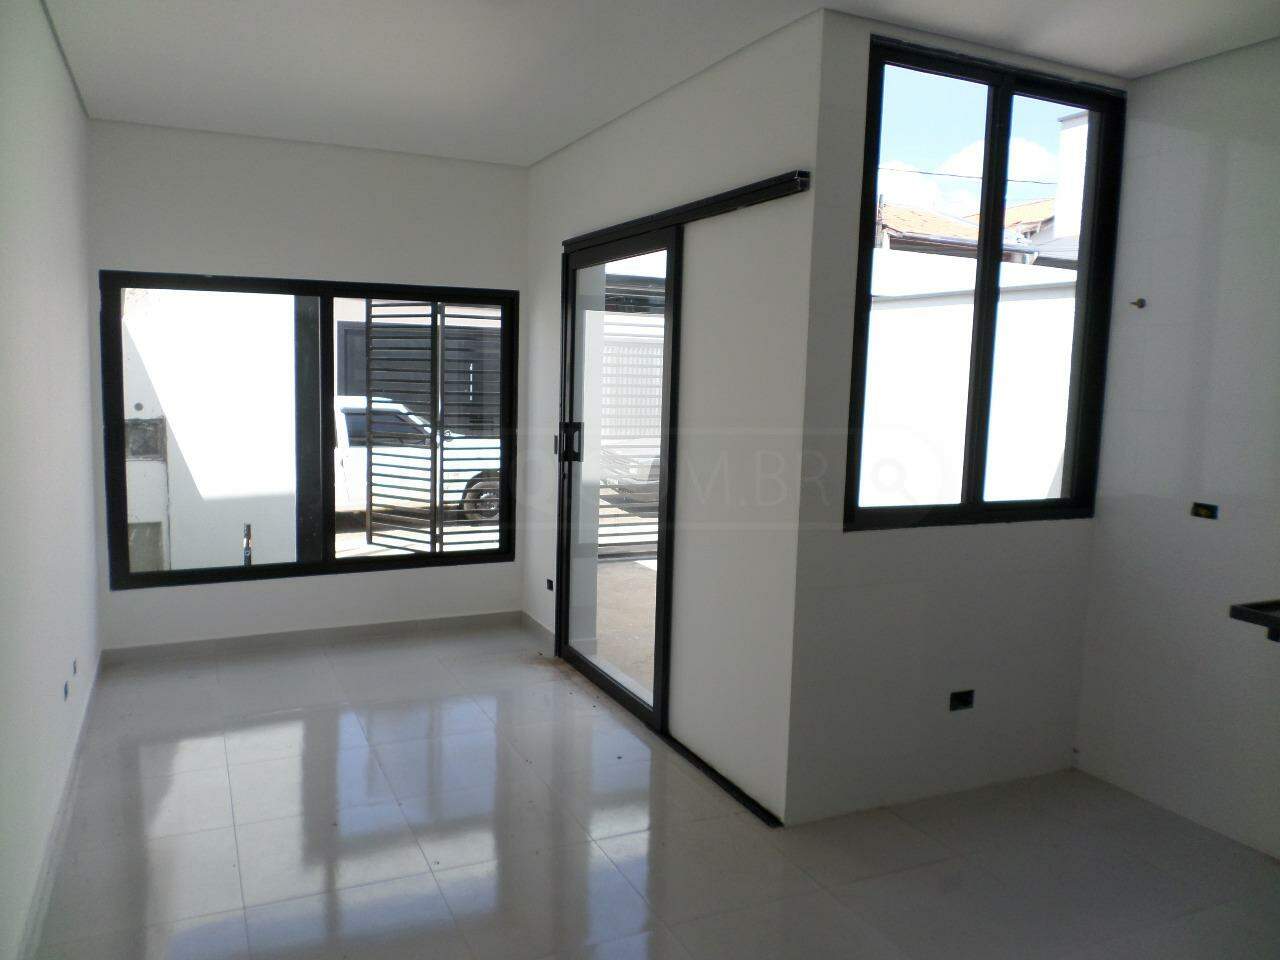 Casa à venda, 1 quarto, 1 vaga, no bairro Residencial Paineiras em Piracicaba - SP